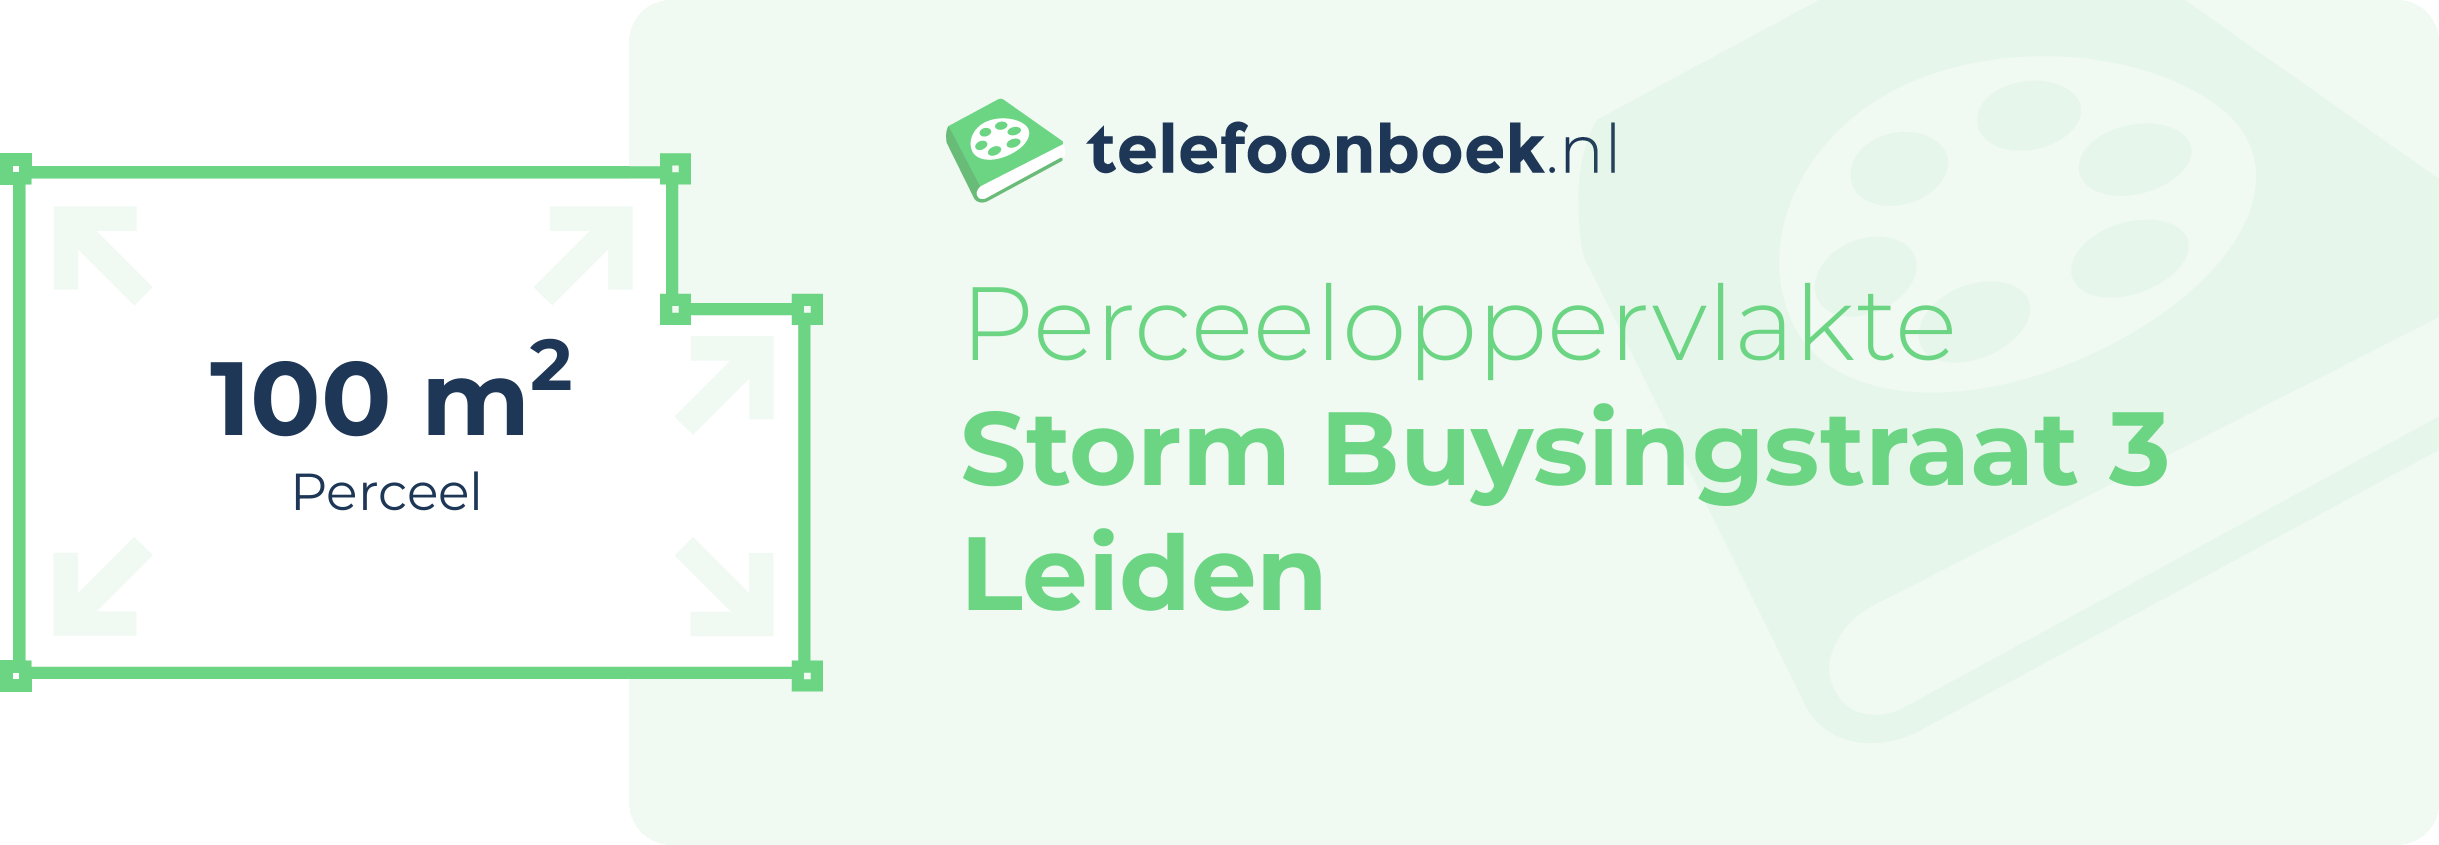 Perceeloppervlakte Storm Buysingstraat 3 Leiden